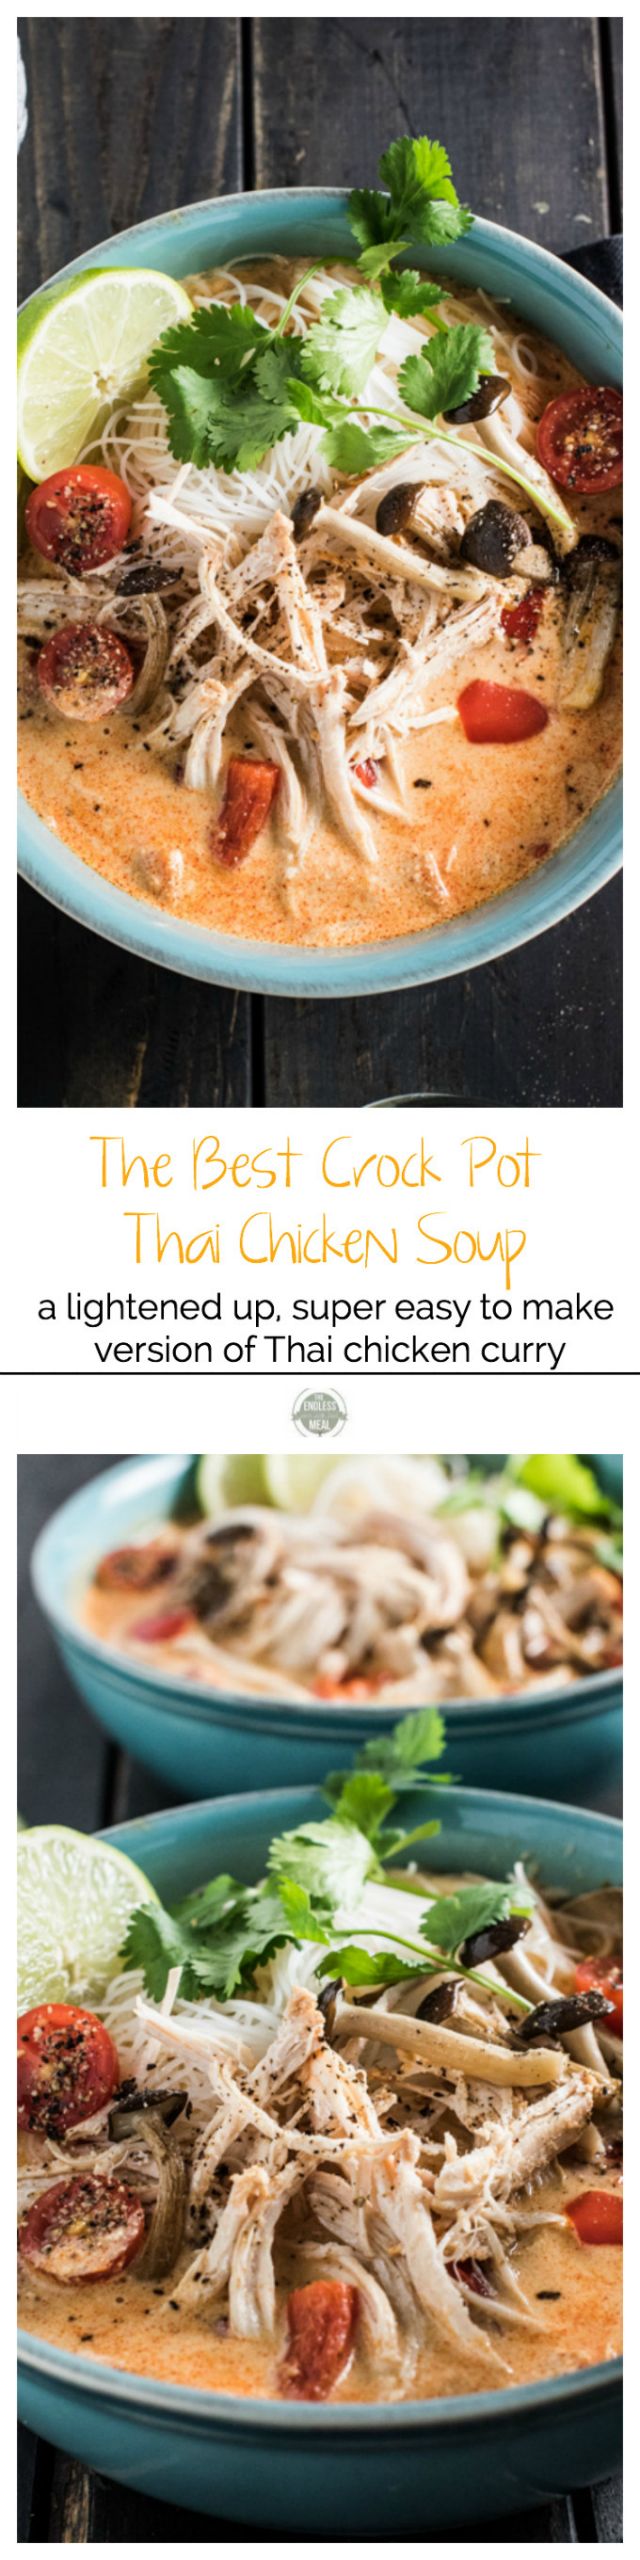 Crockpot Thai Chicken Soup
 The Best Crock Pot Thai Chicken Soup